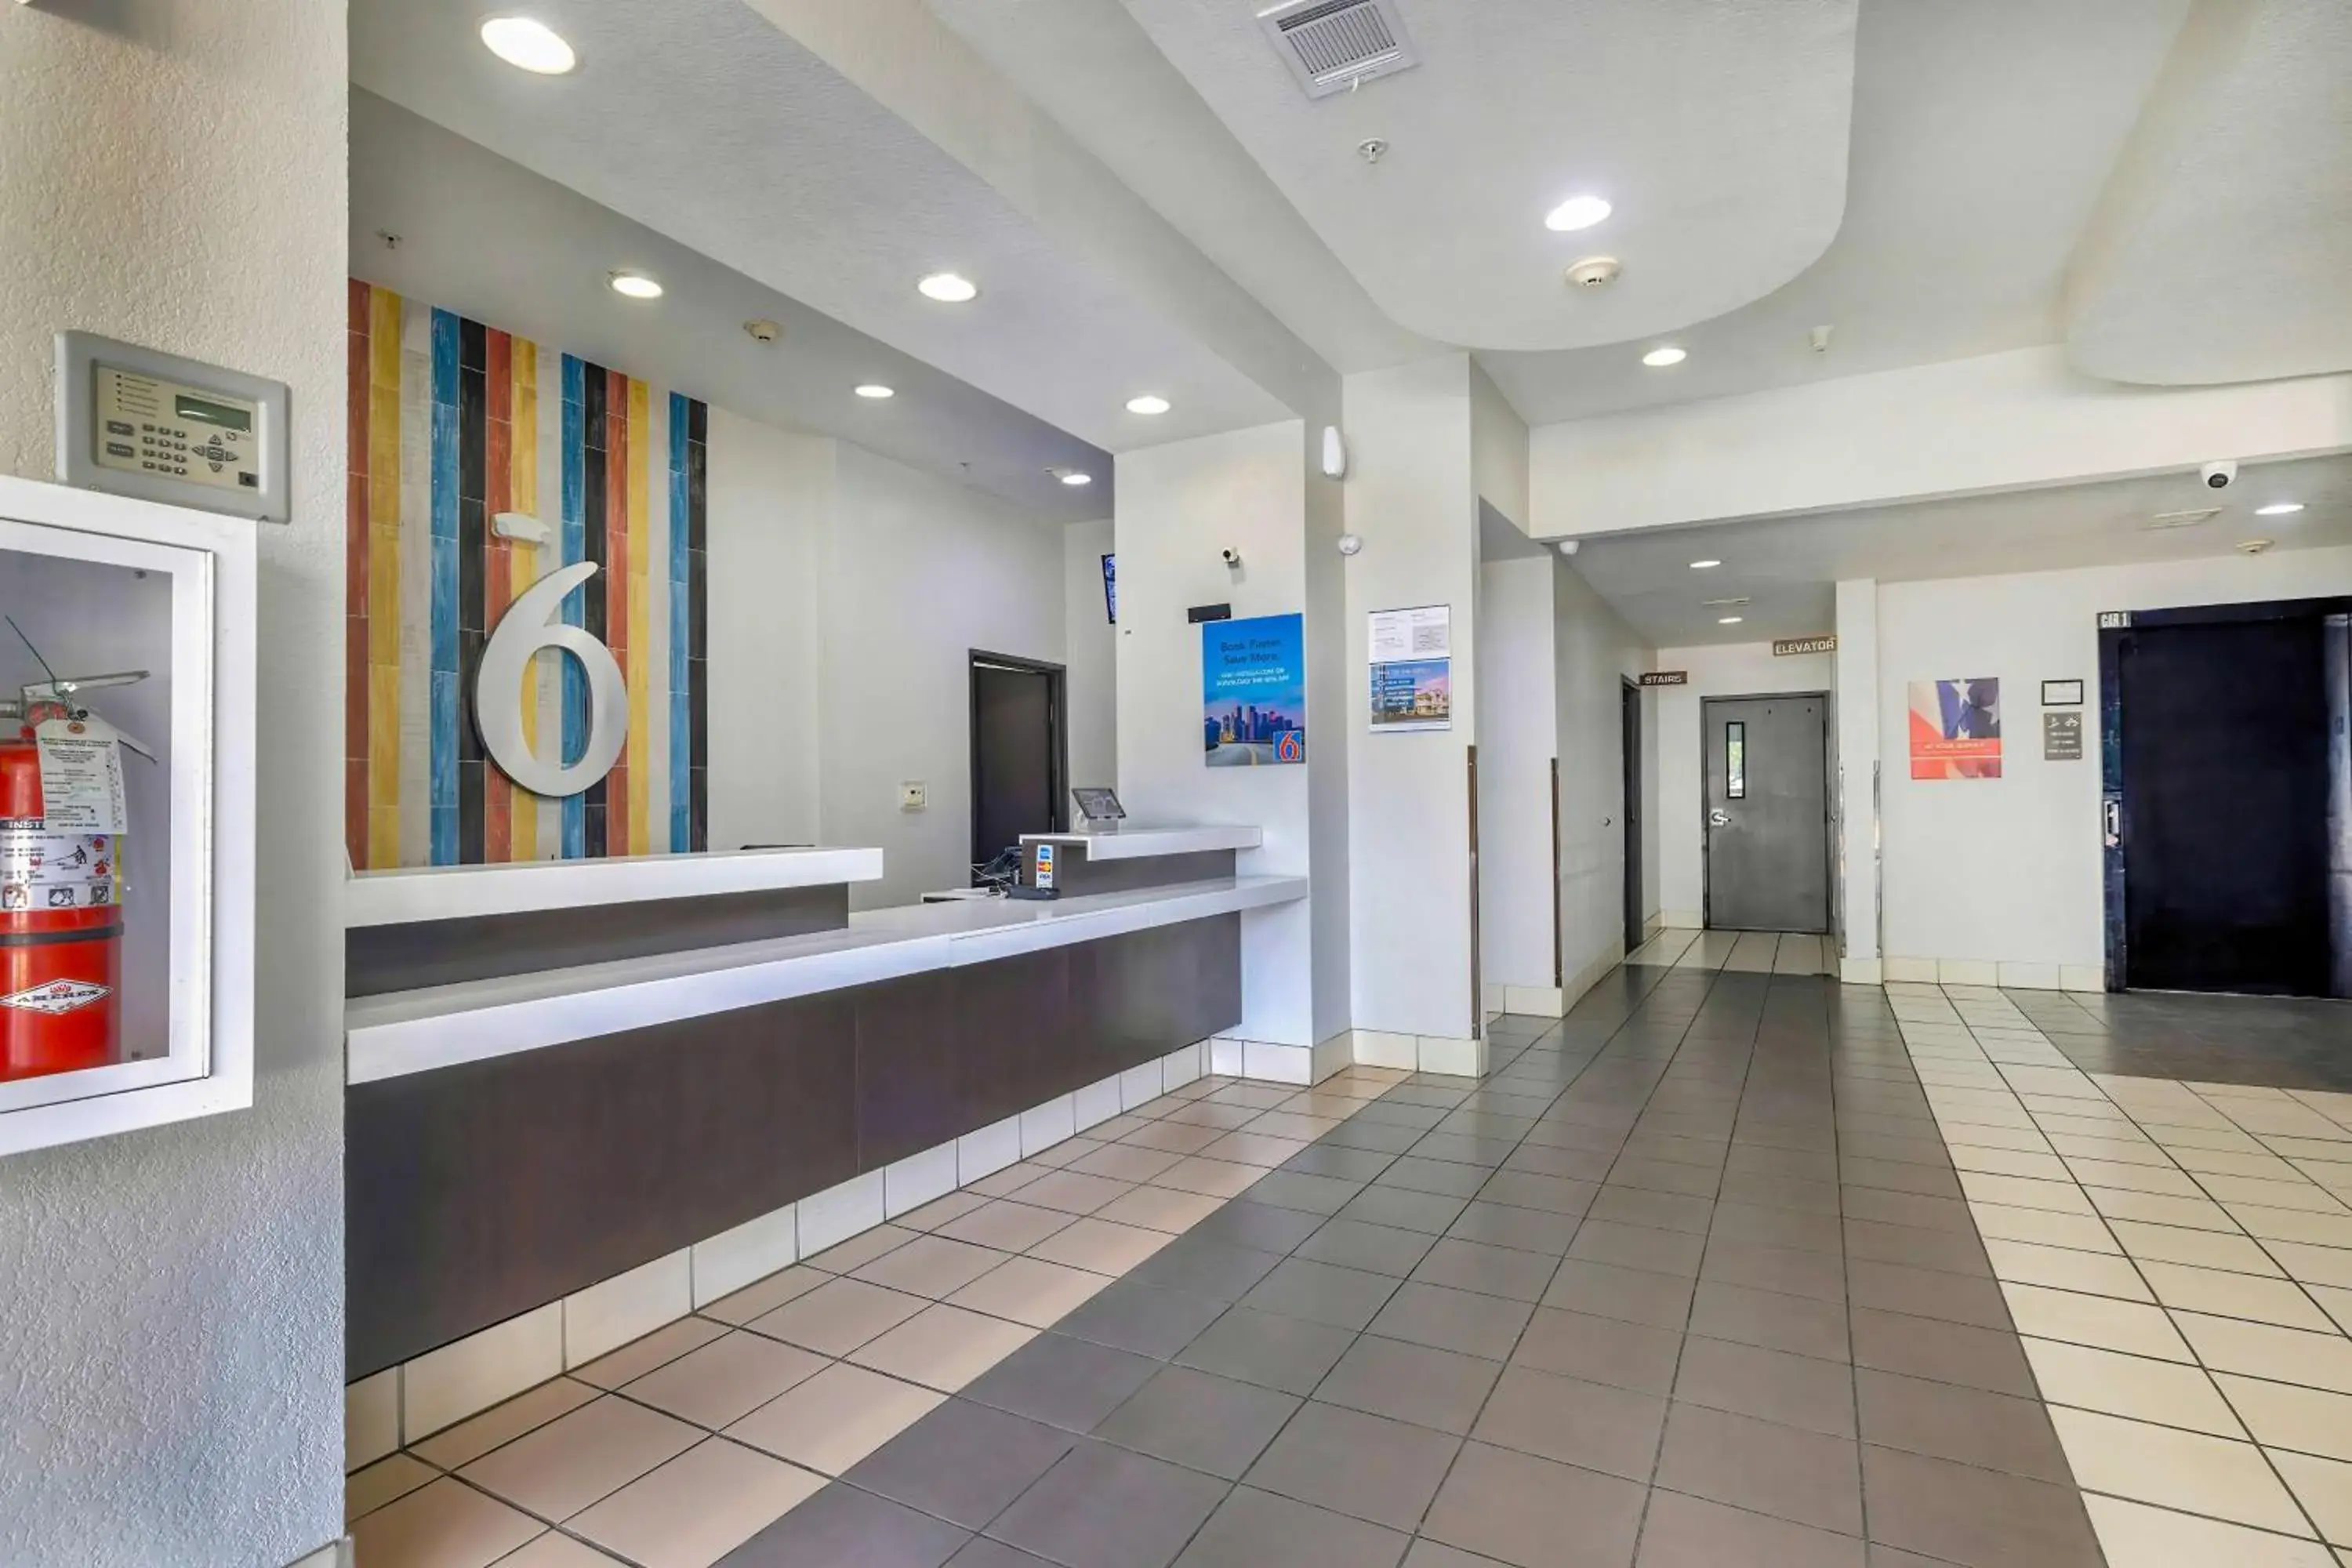 Lobby or reception, Lobby/Reception in Motel 6-Cedar Park, TX